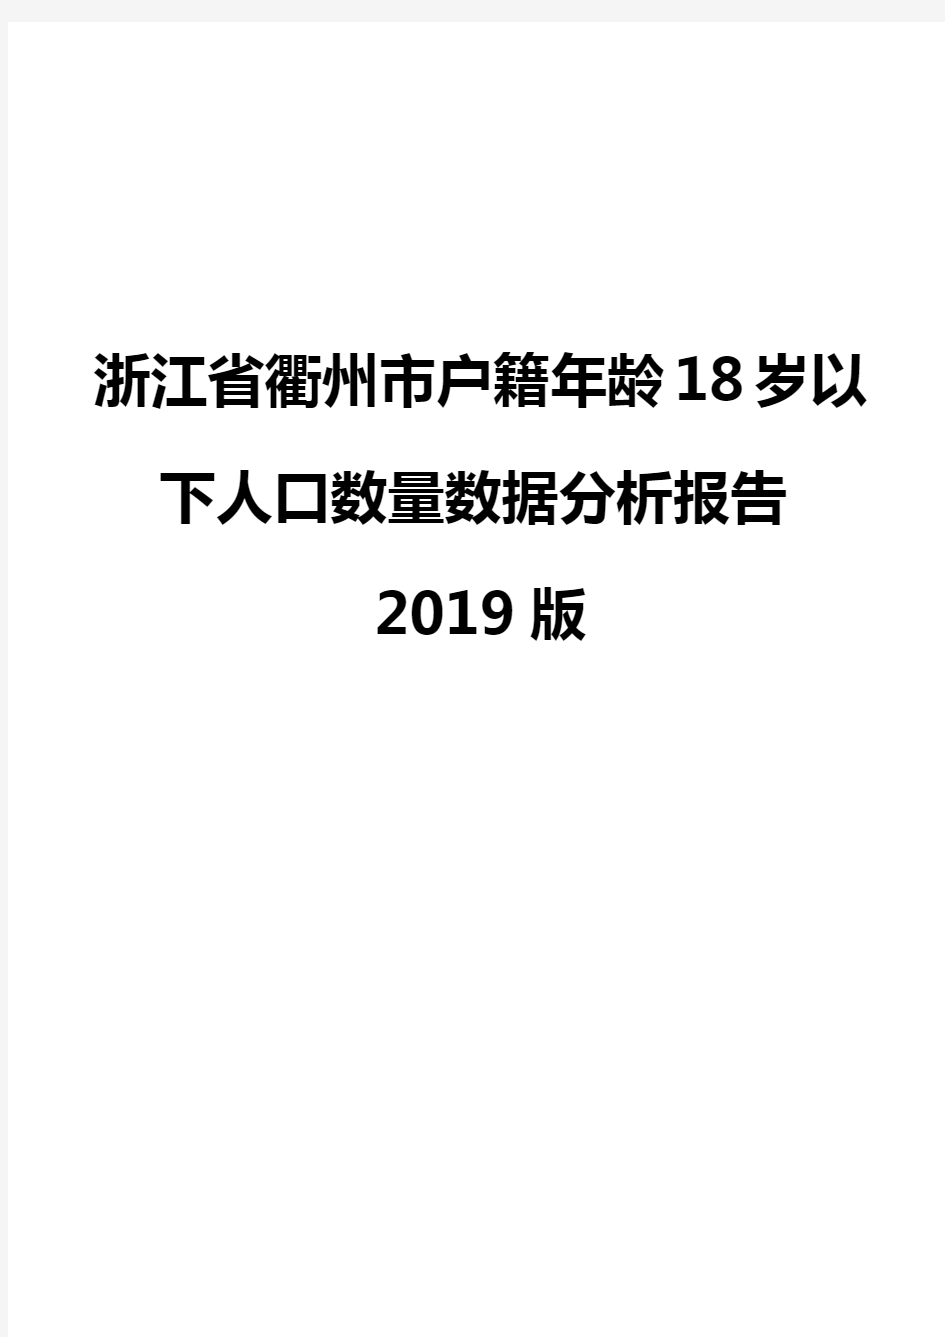 浙江省衢州市户籍年龄18岁以下人口数量数据分析报告2019版